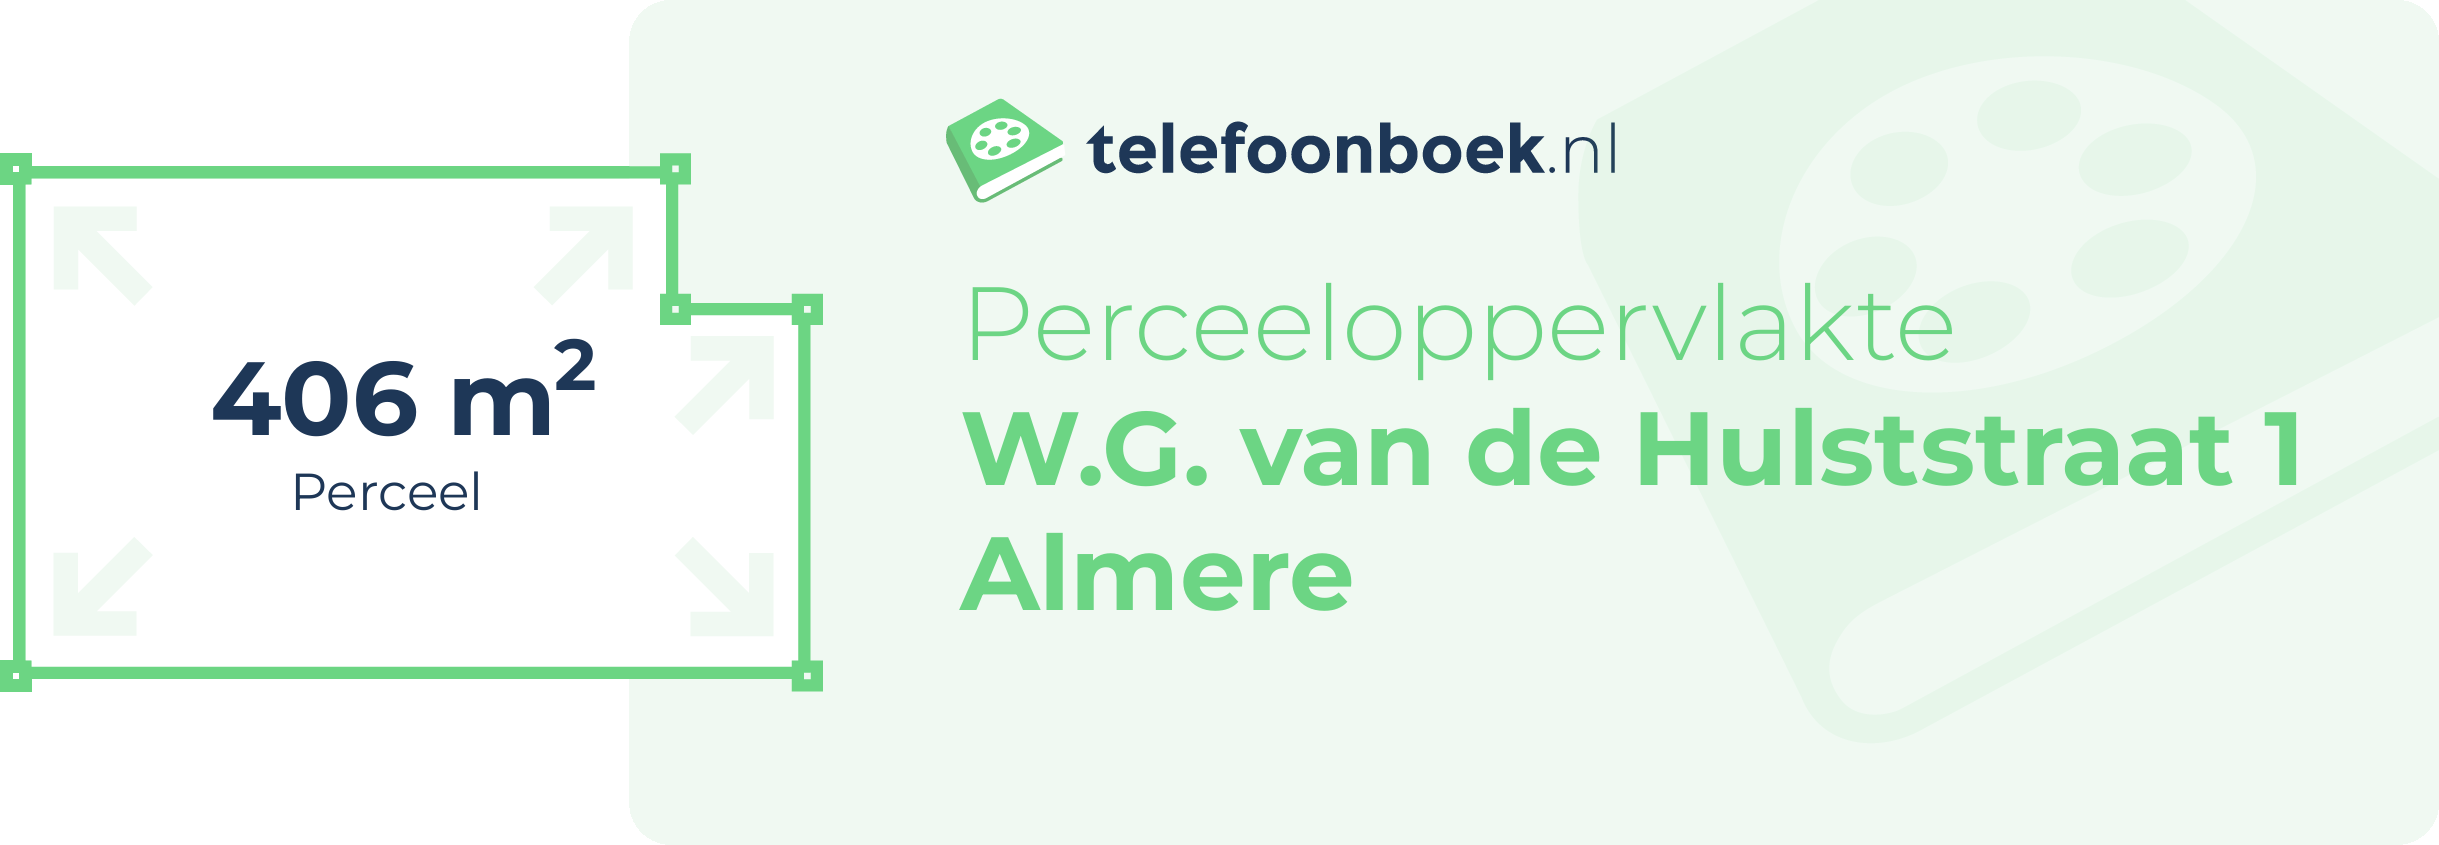 Perceeloppervlakte W.G. Van De Hulststraat 1 Almere